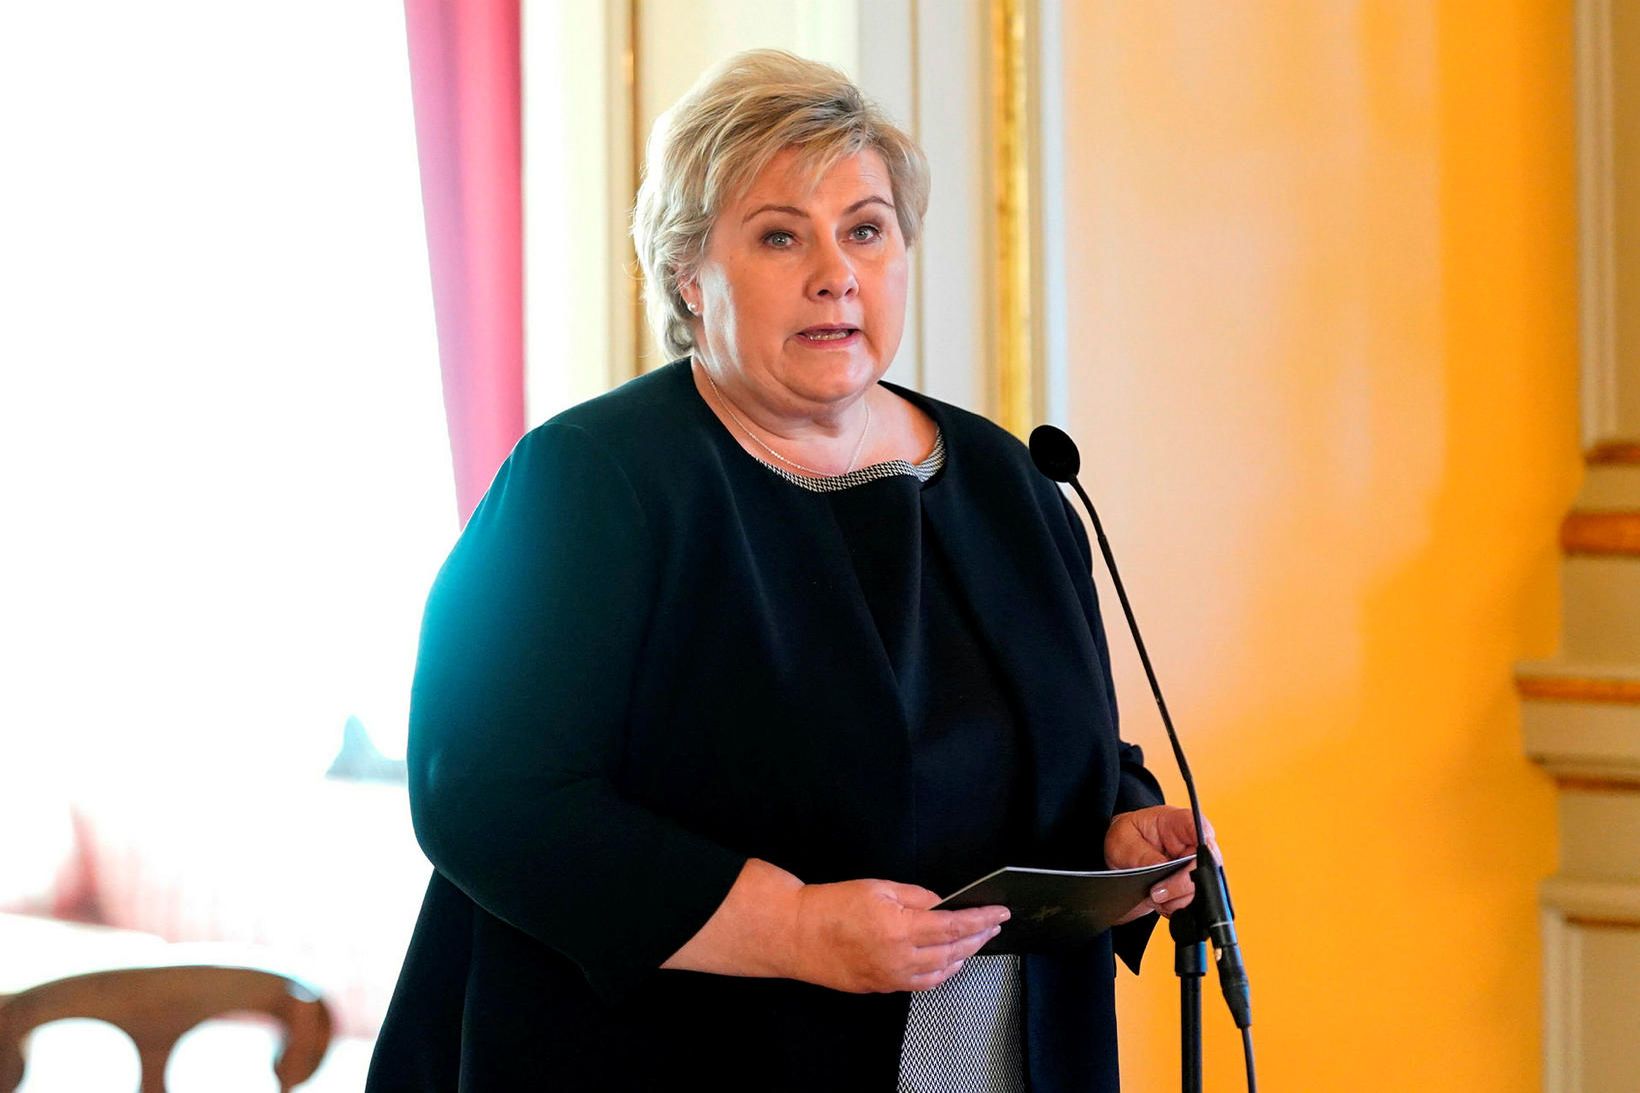 Erna Solberg, forsætisráðherra Noregs.